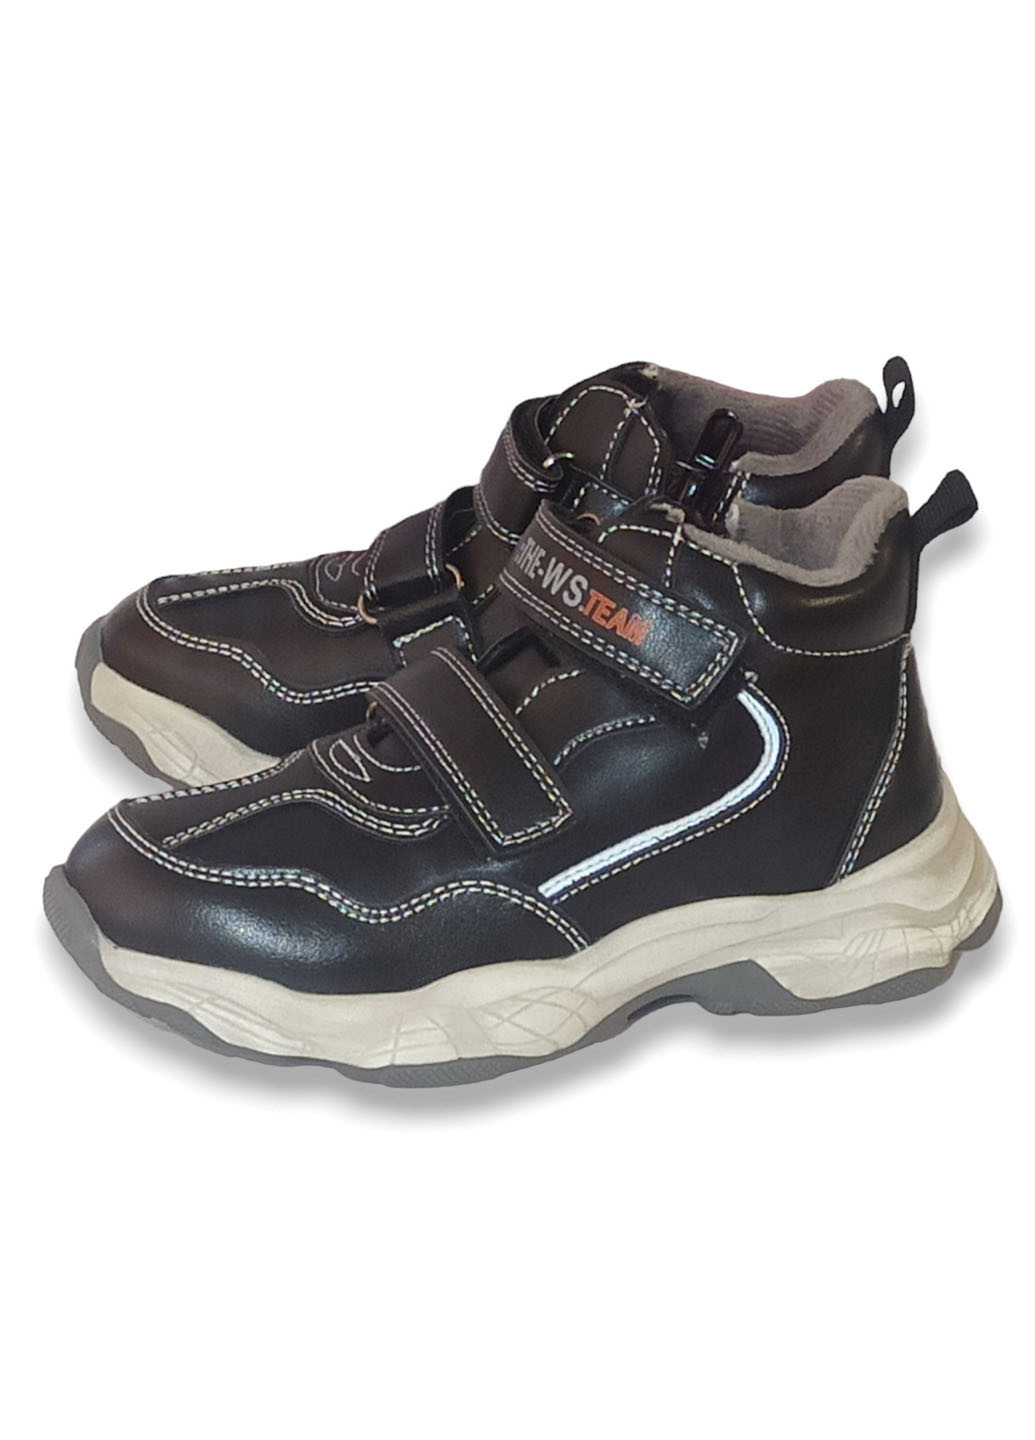 Черные повседневные осенние детские демисезонные ботинки для мальчика утепленные на флисе 5975 р.27-17,5см 29-18,5см Weestep